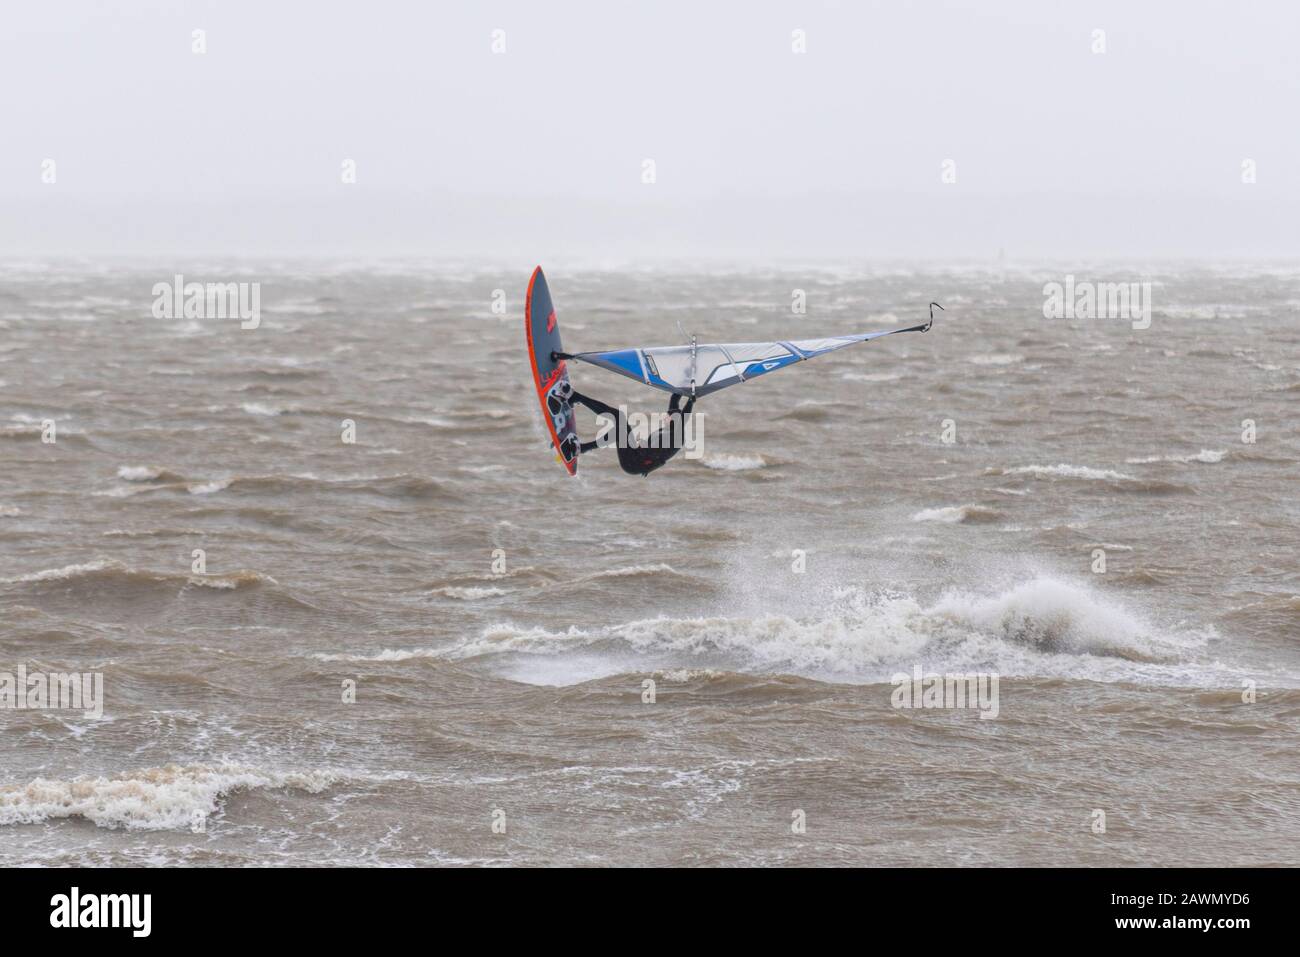 Ein Windsurfer, der auf rauer See in die Luft in der Themsemündung sprang, während der Sturm Ciara das Wetter in Southend on Sea, Essex, Großbritannien beeinträchtigt. Copyspace Stockfoto